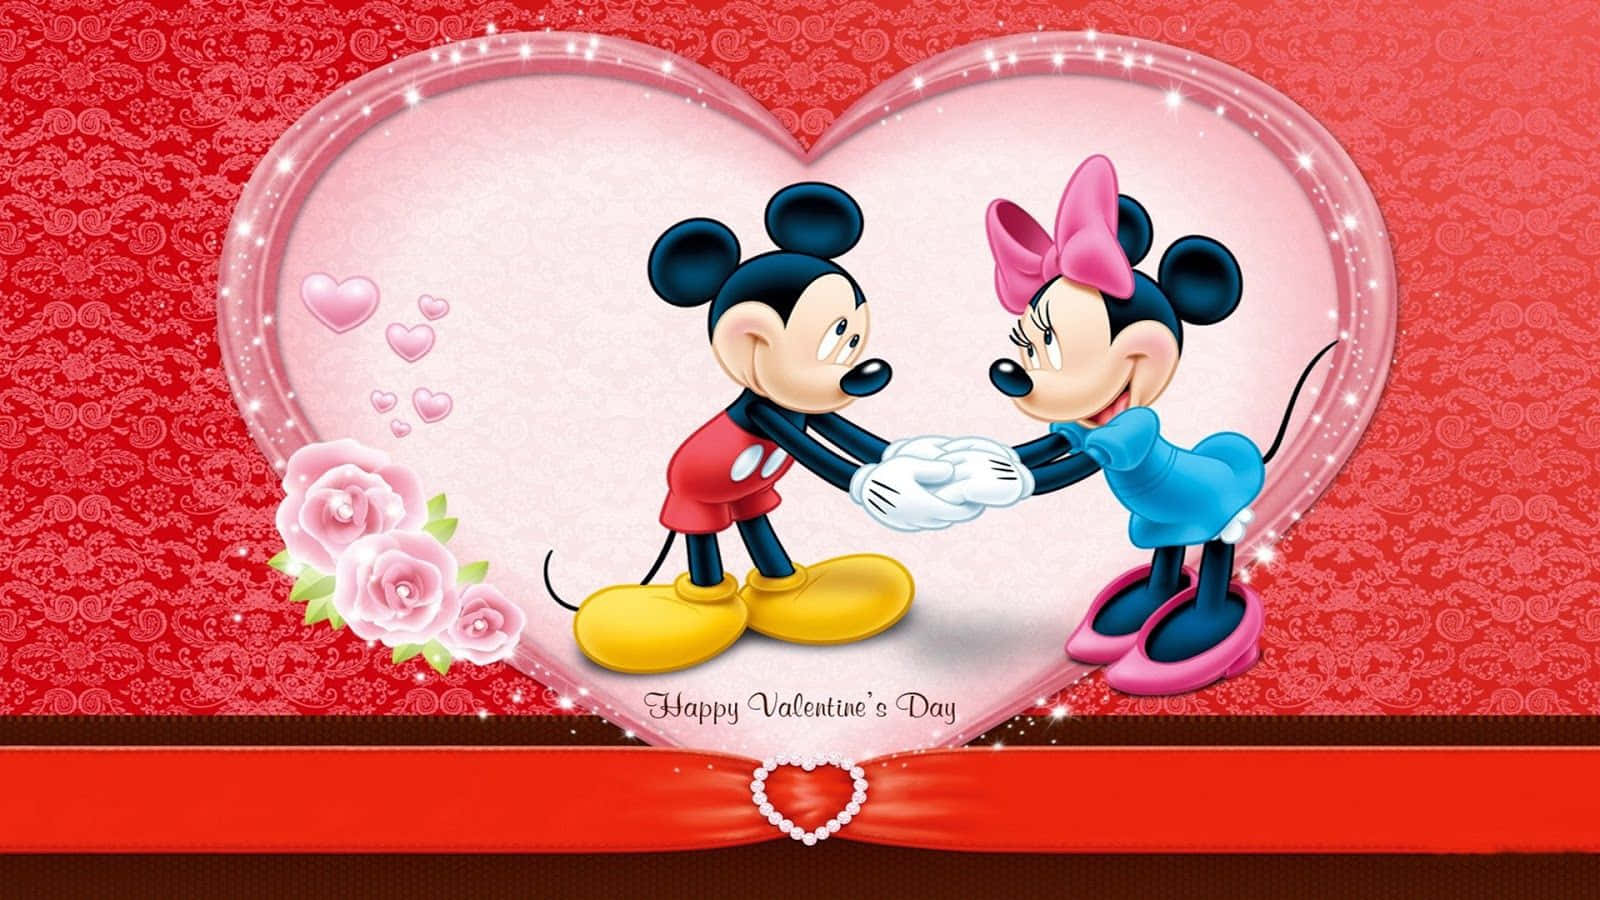 Fondode Pantalla De Mickey Y Minnie Mouse Para El Día De San Valentín.